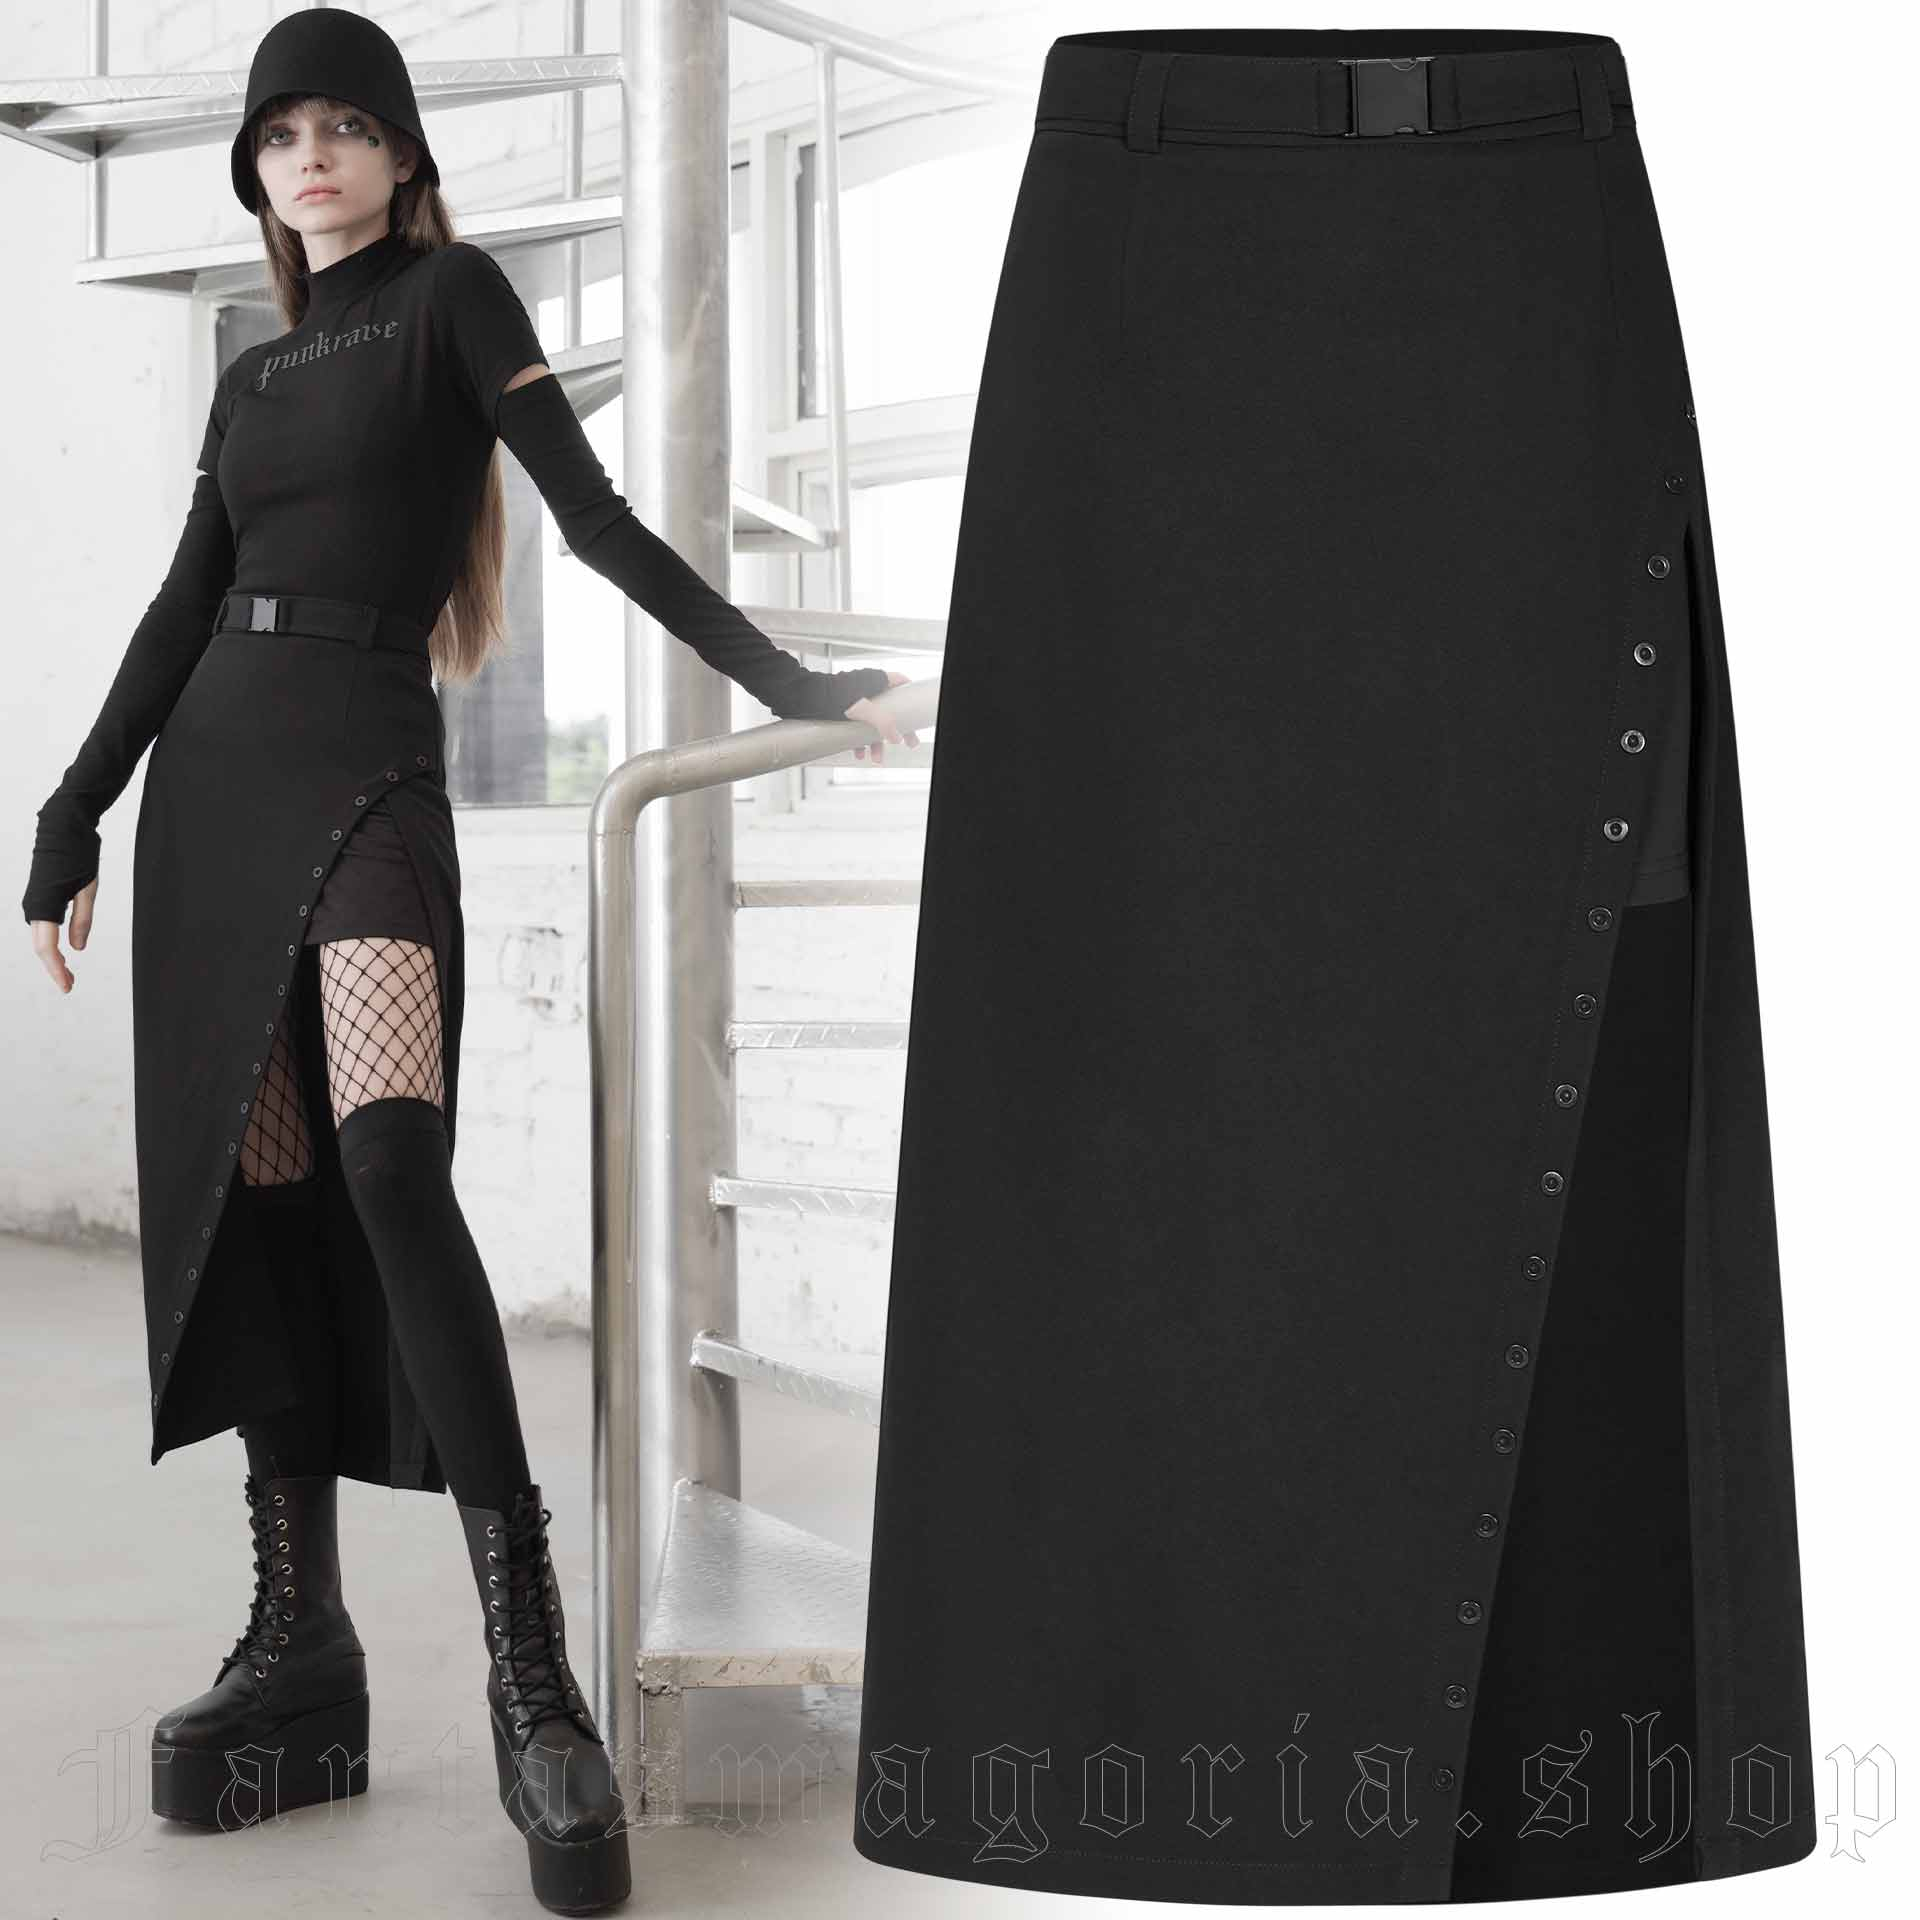 Noir Skirt by RAVE brand